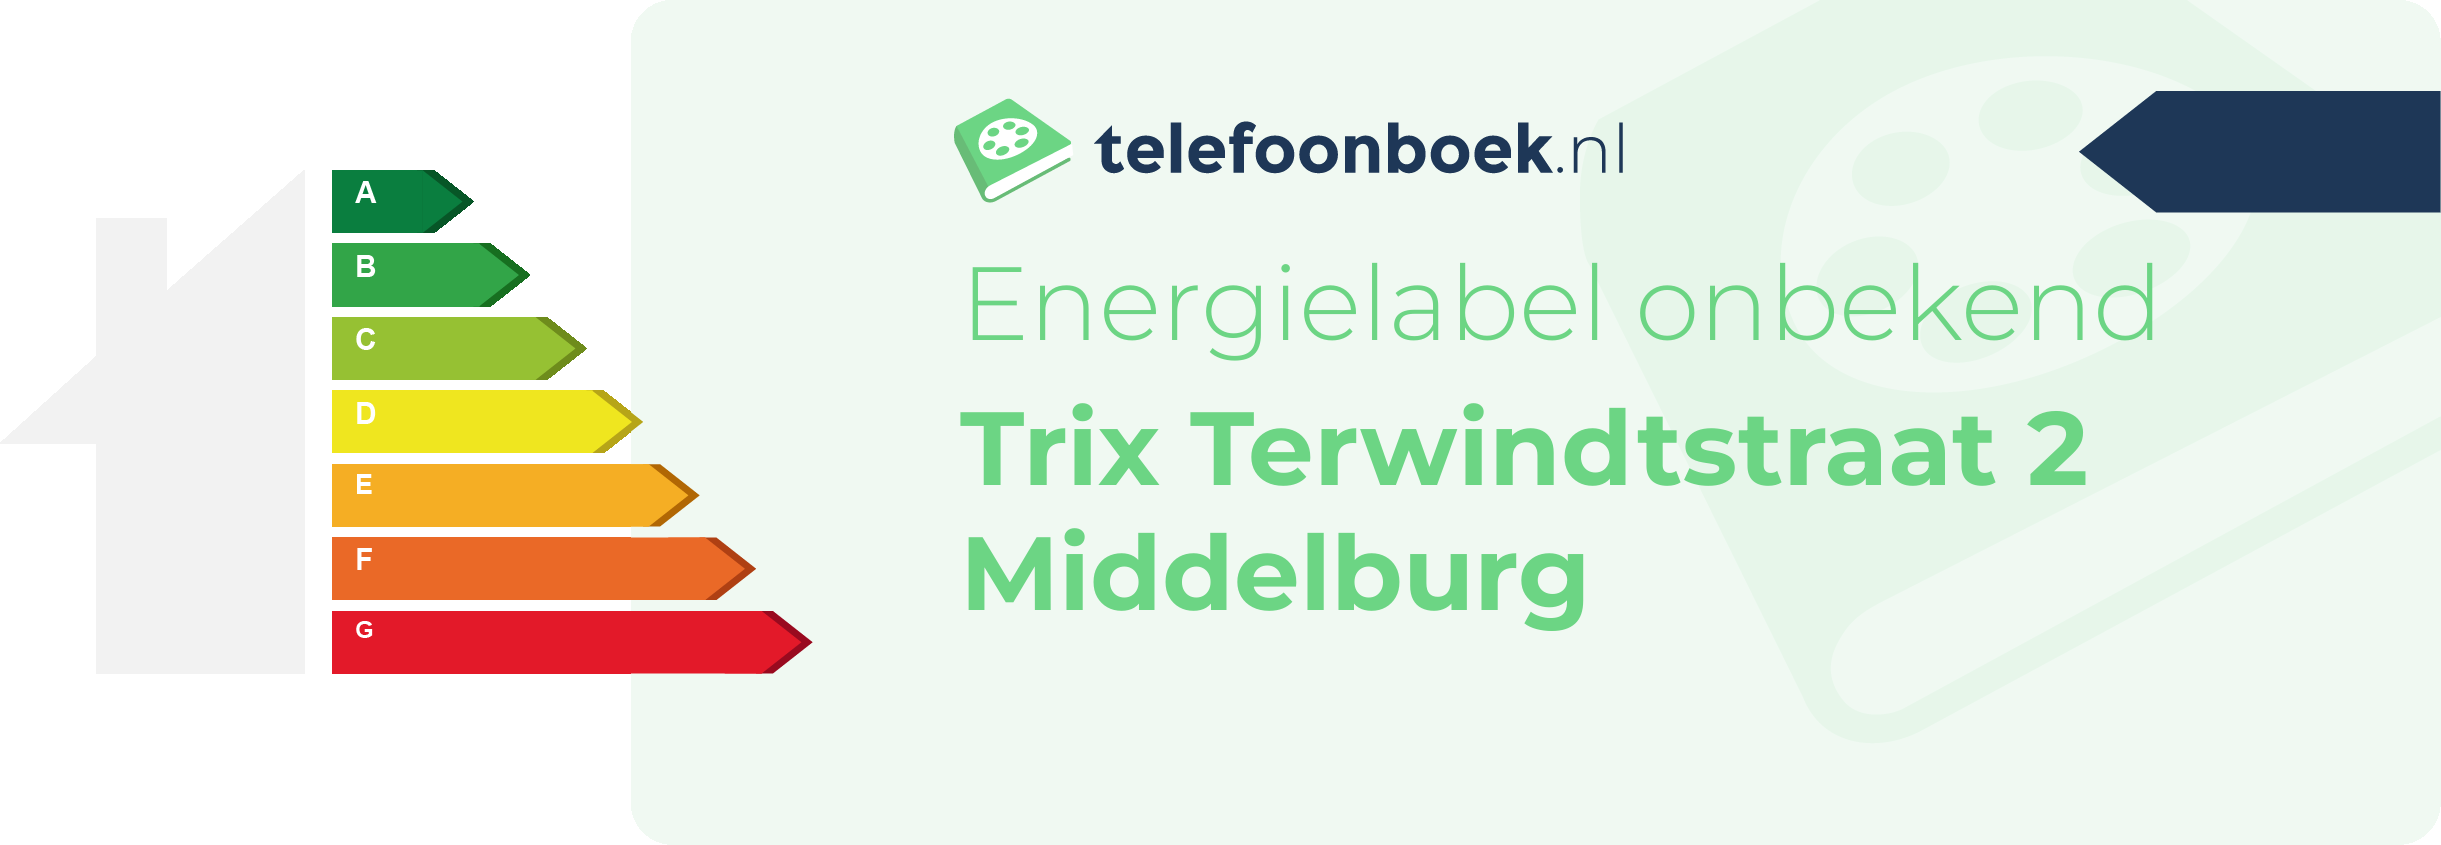 Energielabel Trix Terwindtstraat 2 Middelburg